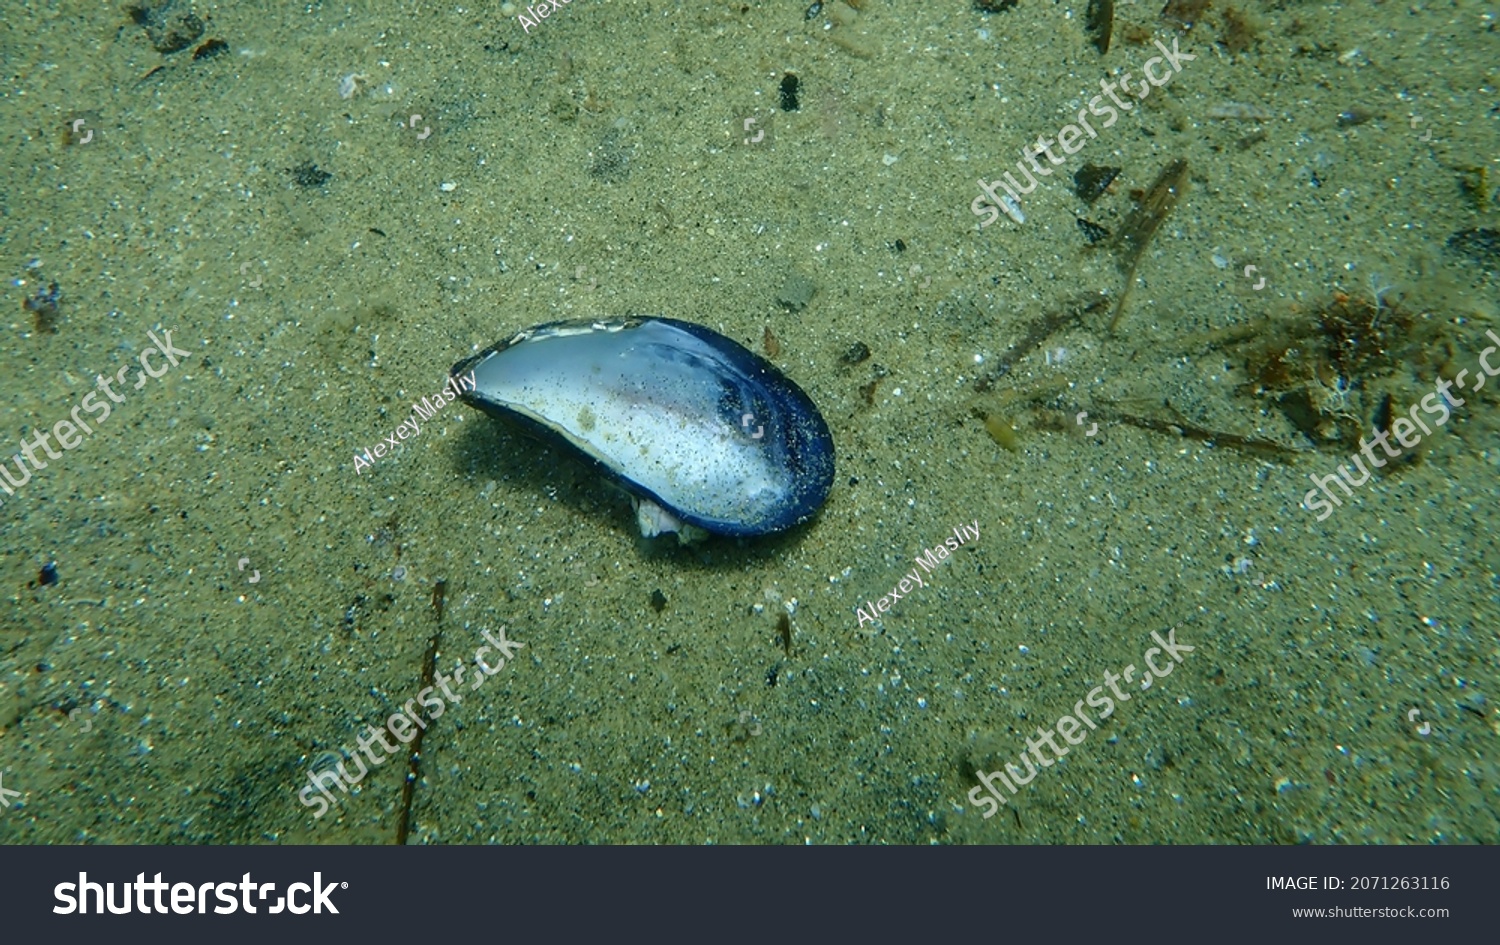 Seashell of bivalve mollusc Blue mussel or Common mussel (Mytilus edulis) undersea, Aegean Sea, Greece, Halkidiki #2071263116